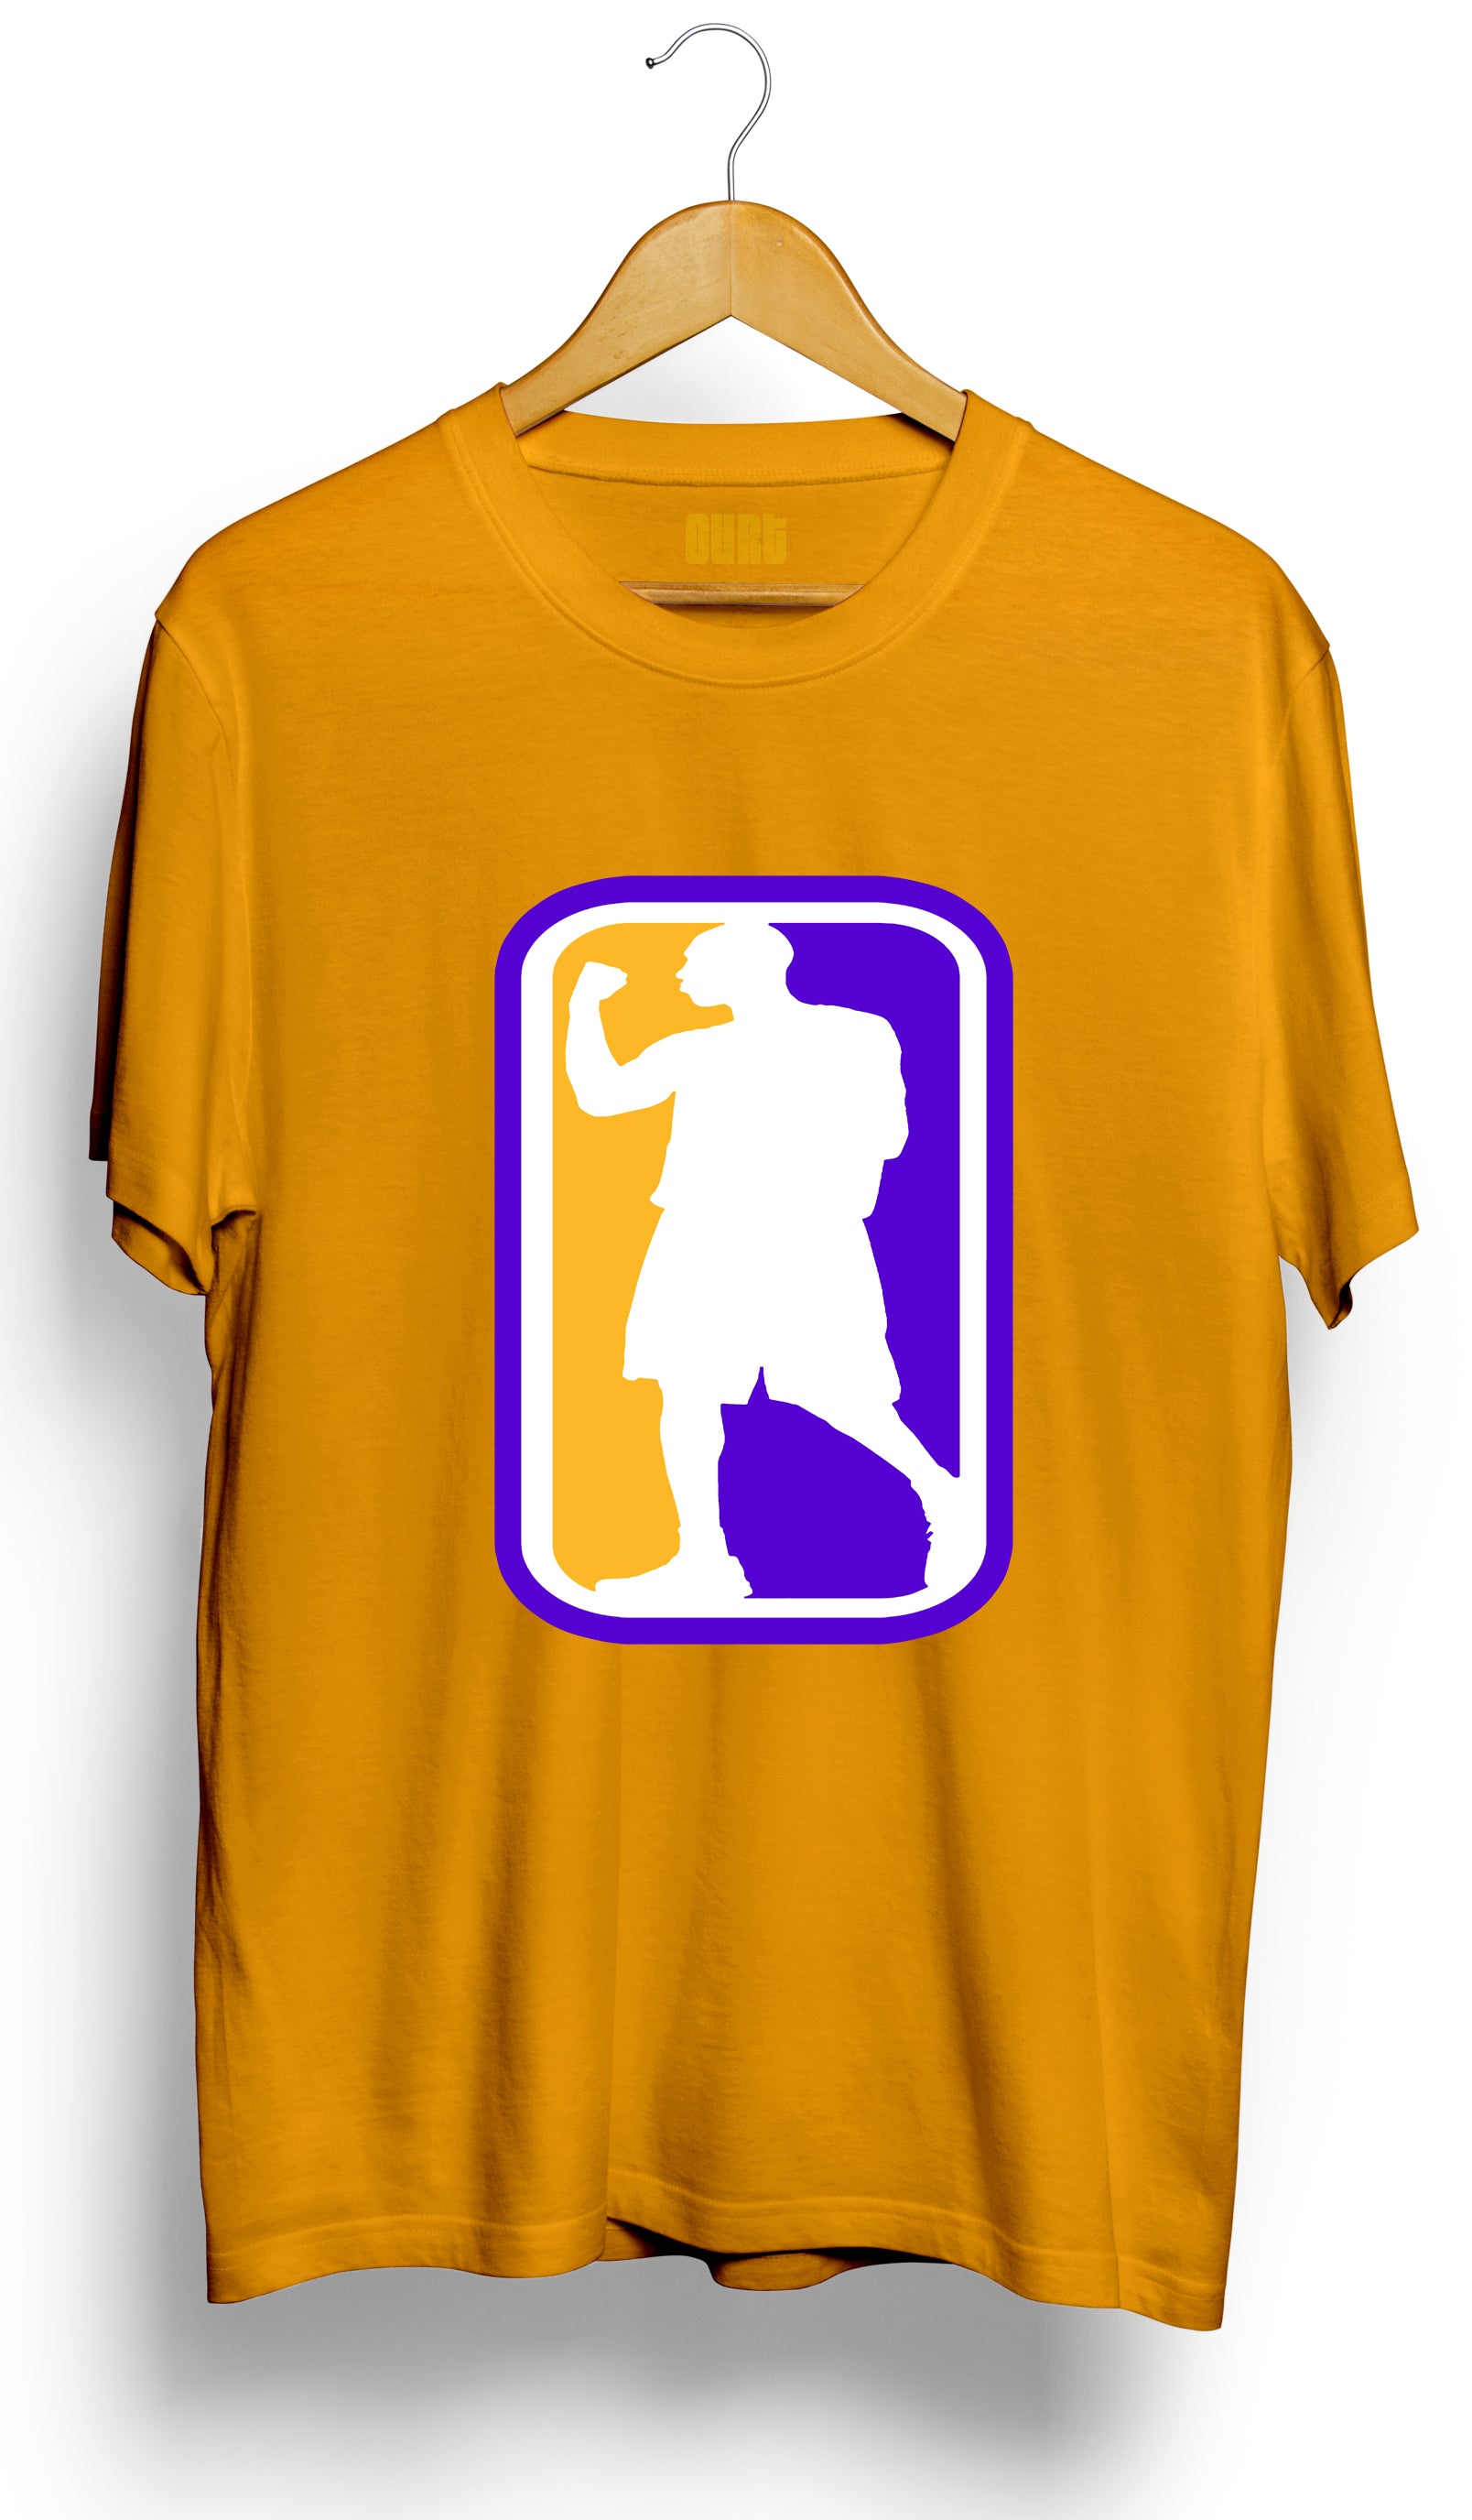 Kobe Bryant Lakers Jersey Art Tshirt Kobe Mamba RIP - DESAINS STORE